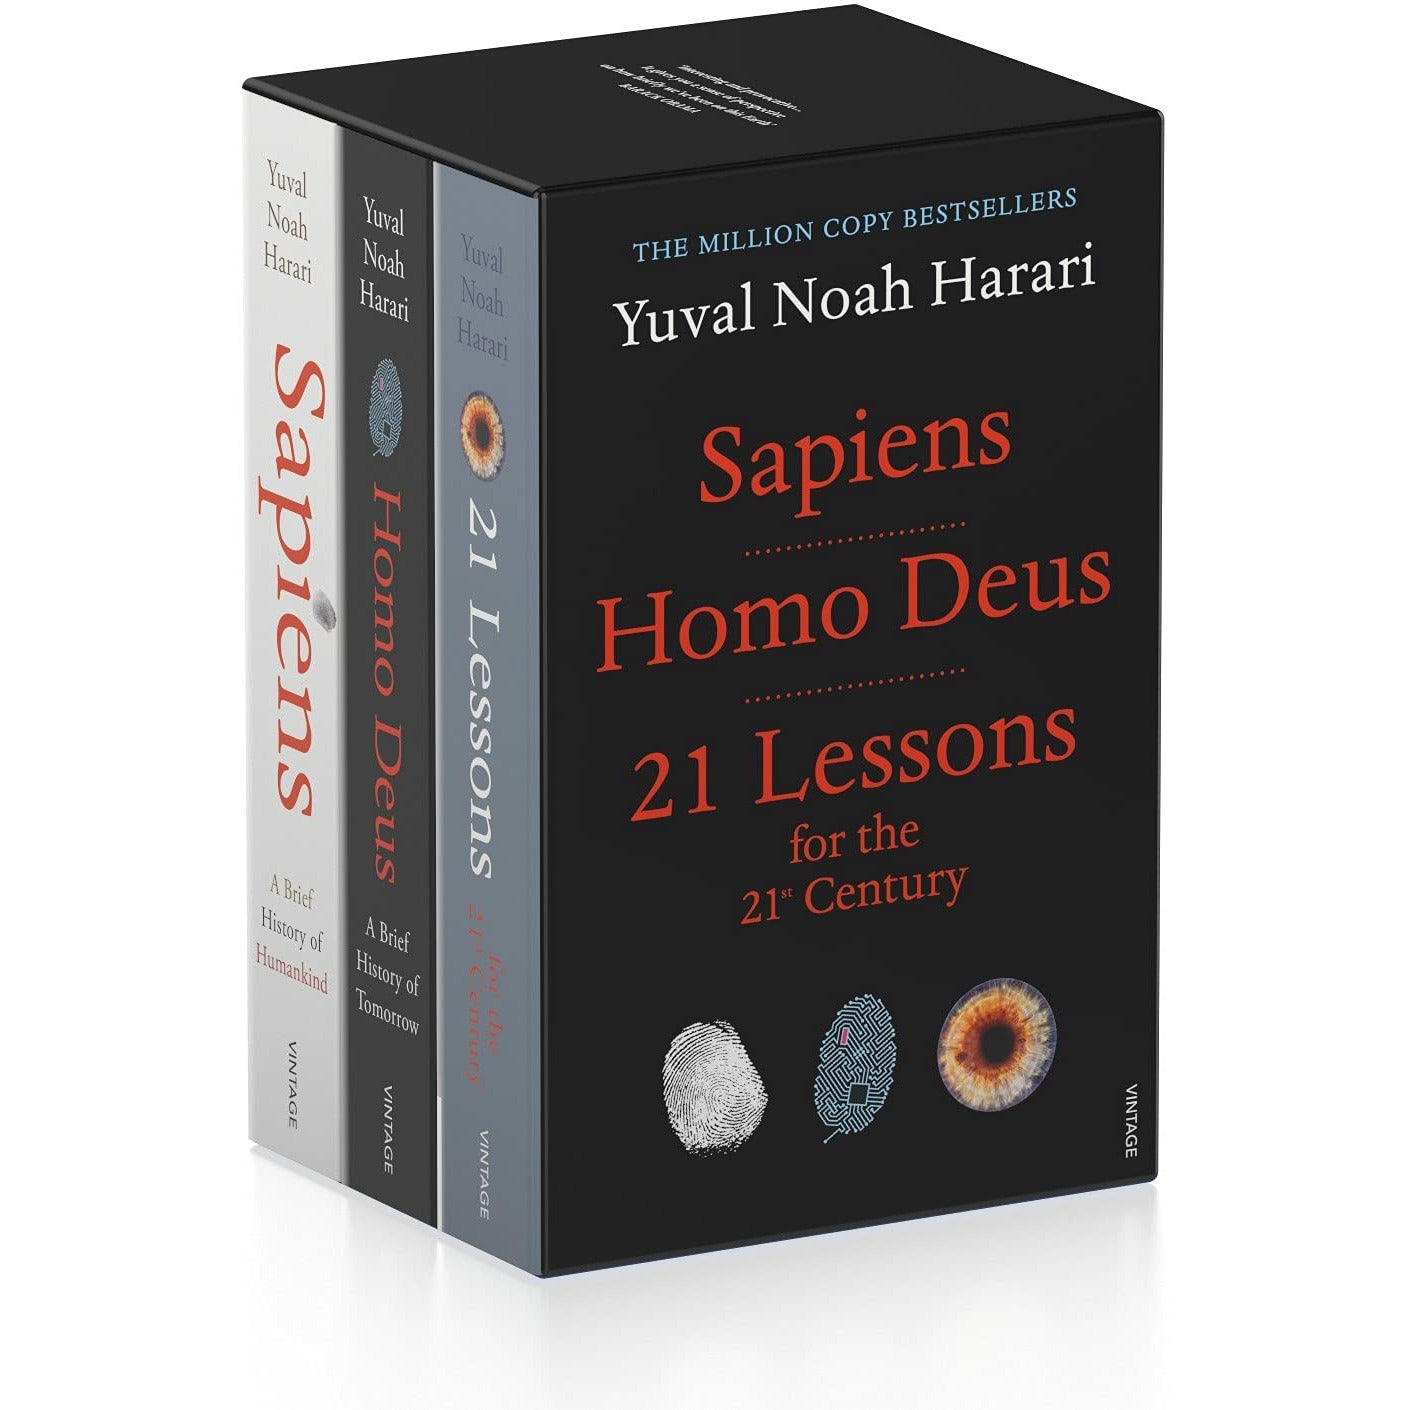 Ной харари 21 урок. Yuval Noah Harari books. Ю Харари книги. Юваль Ной Харари sapiens отзывы.